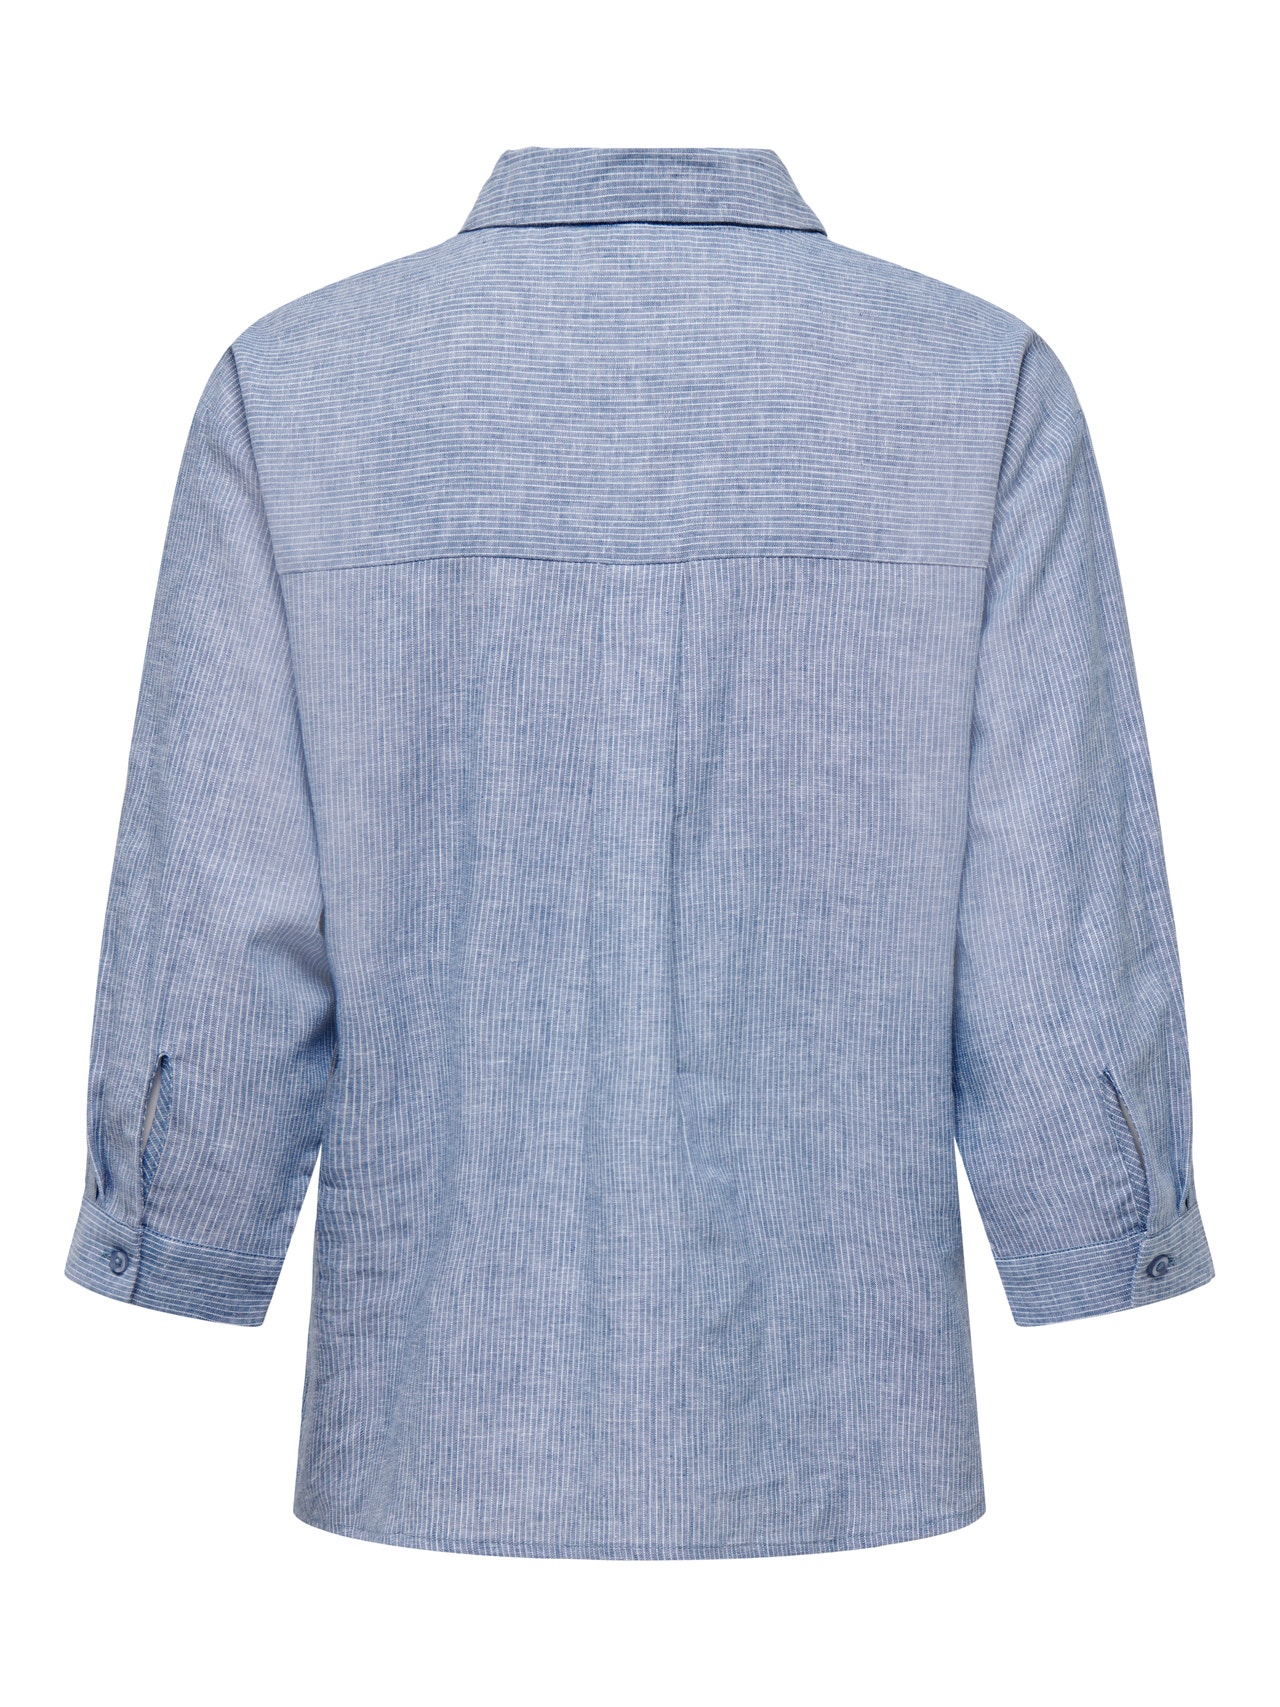 ONLY Camisas Corte regular Cuello de camisa Puños doblados -Dresden Blue - 15292424